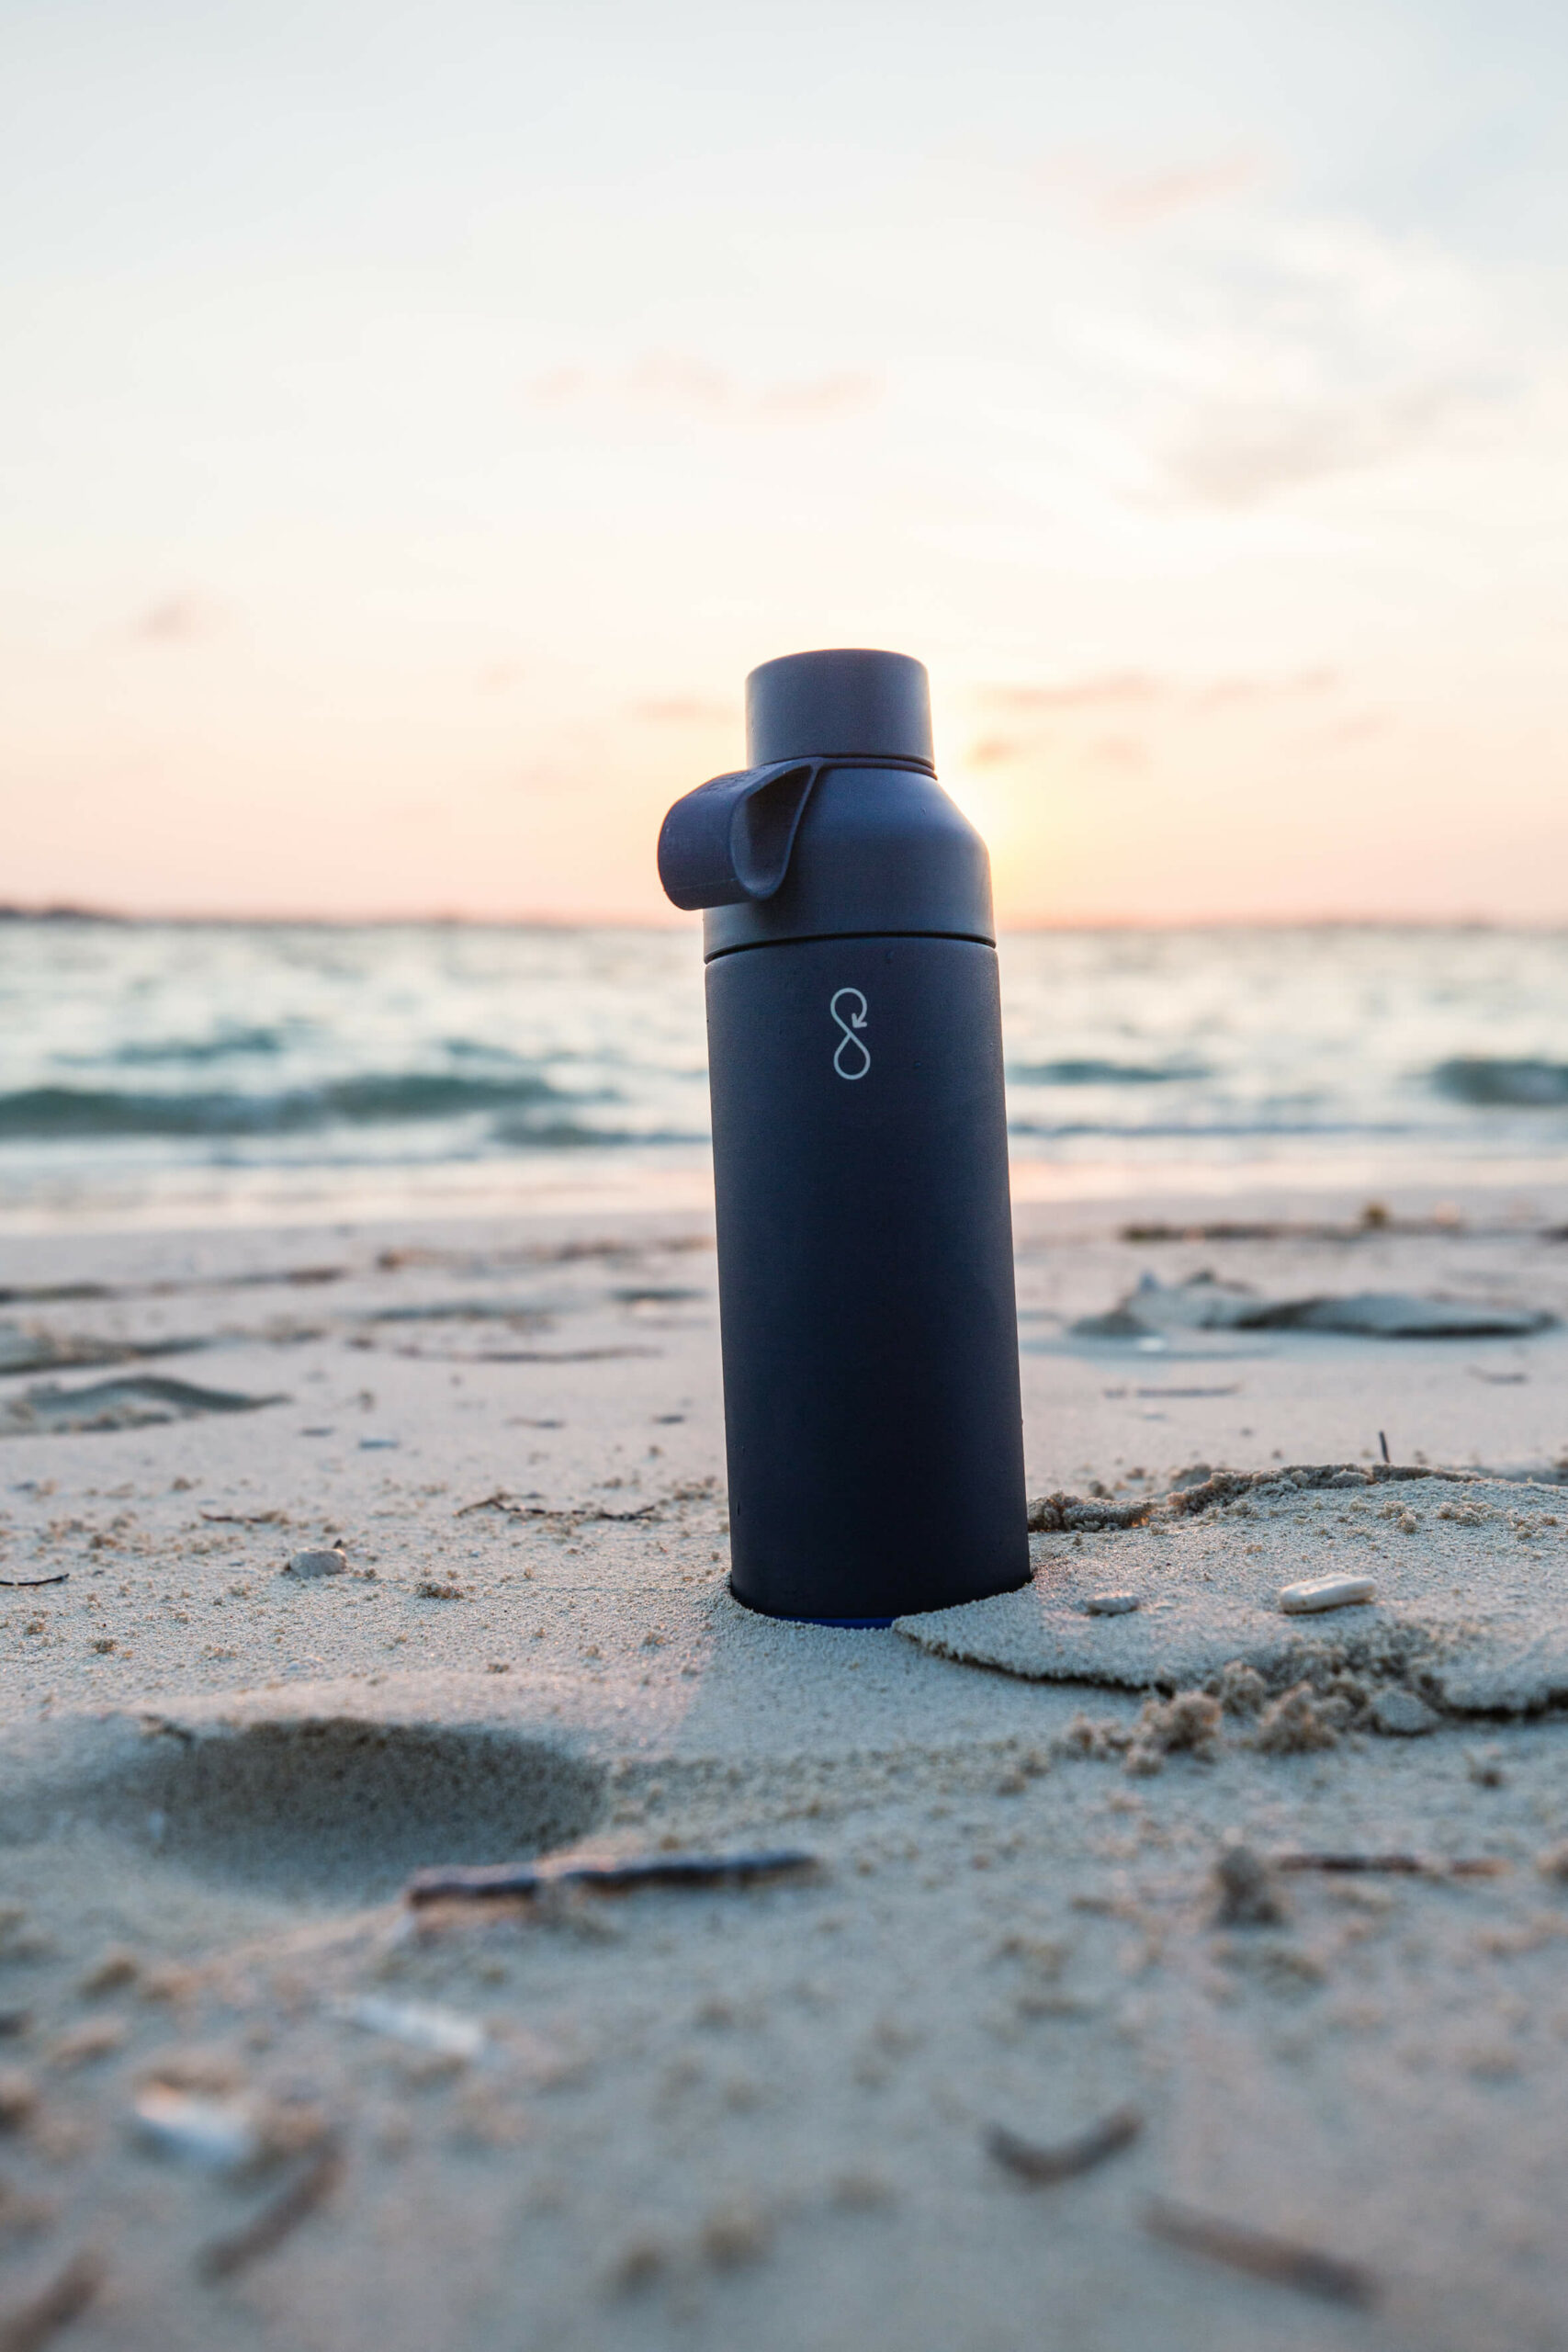 Ocean Bottle in the beach